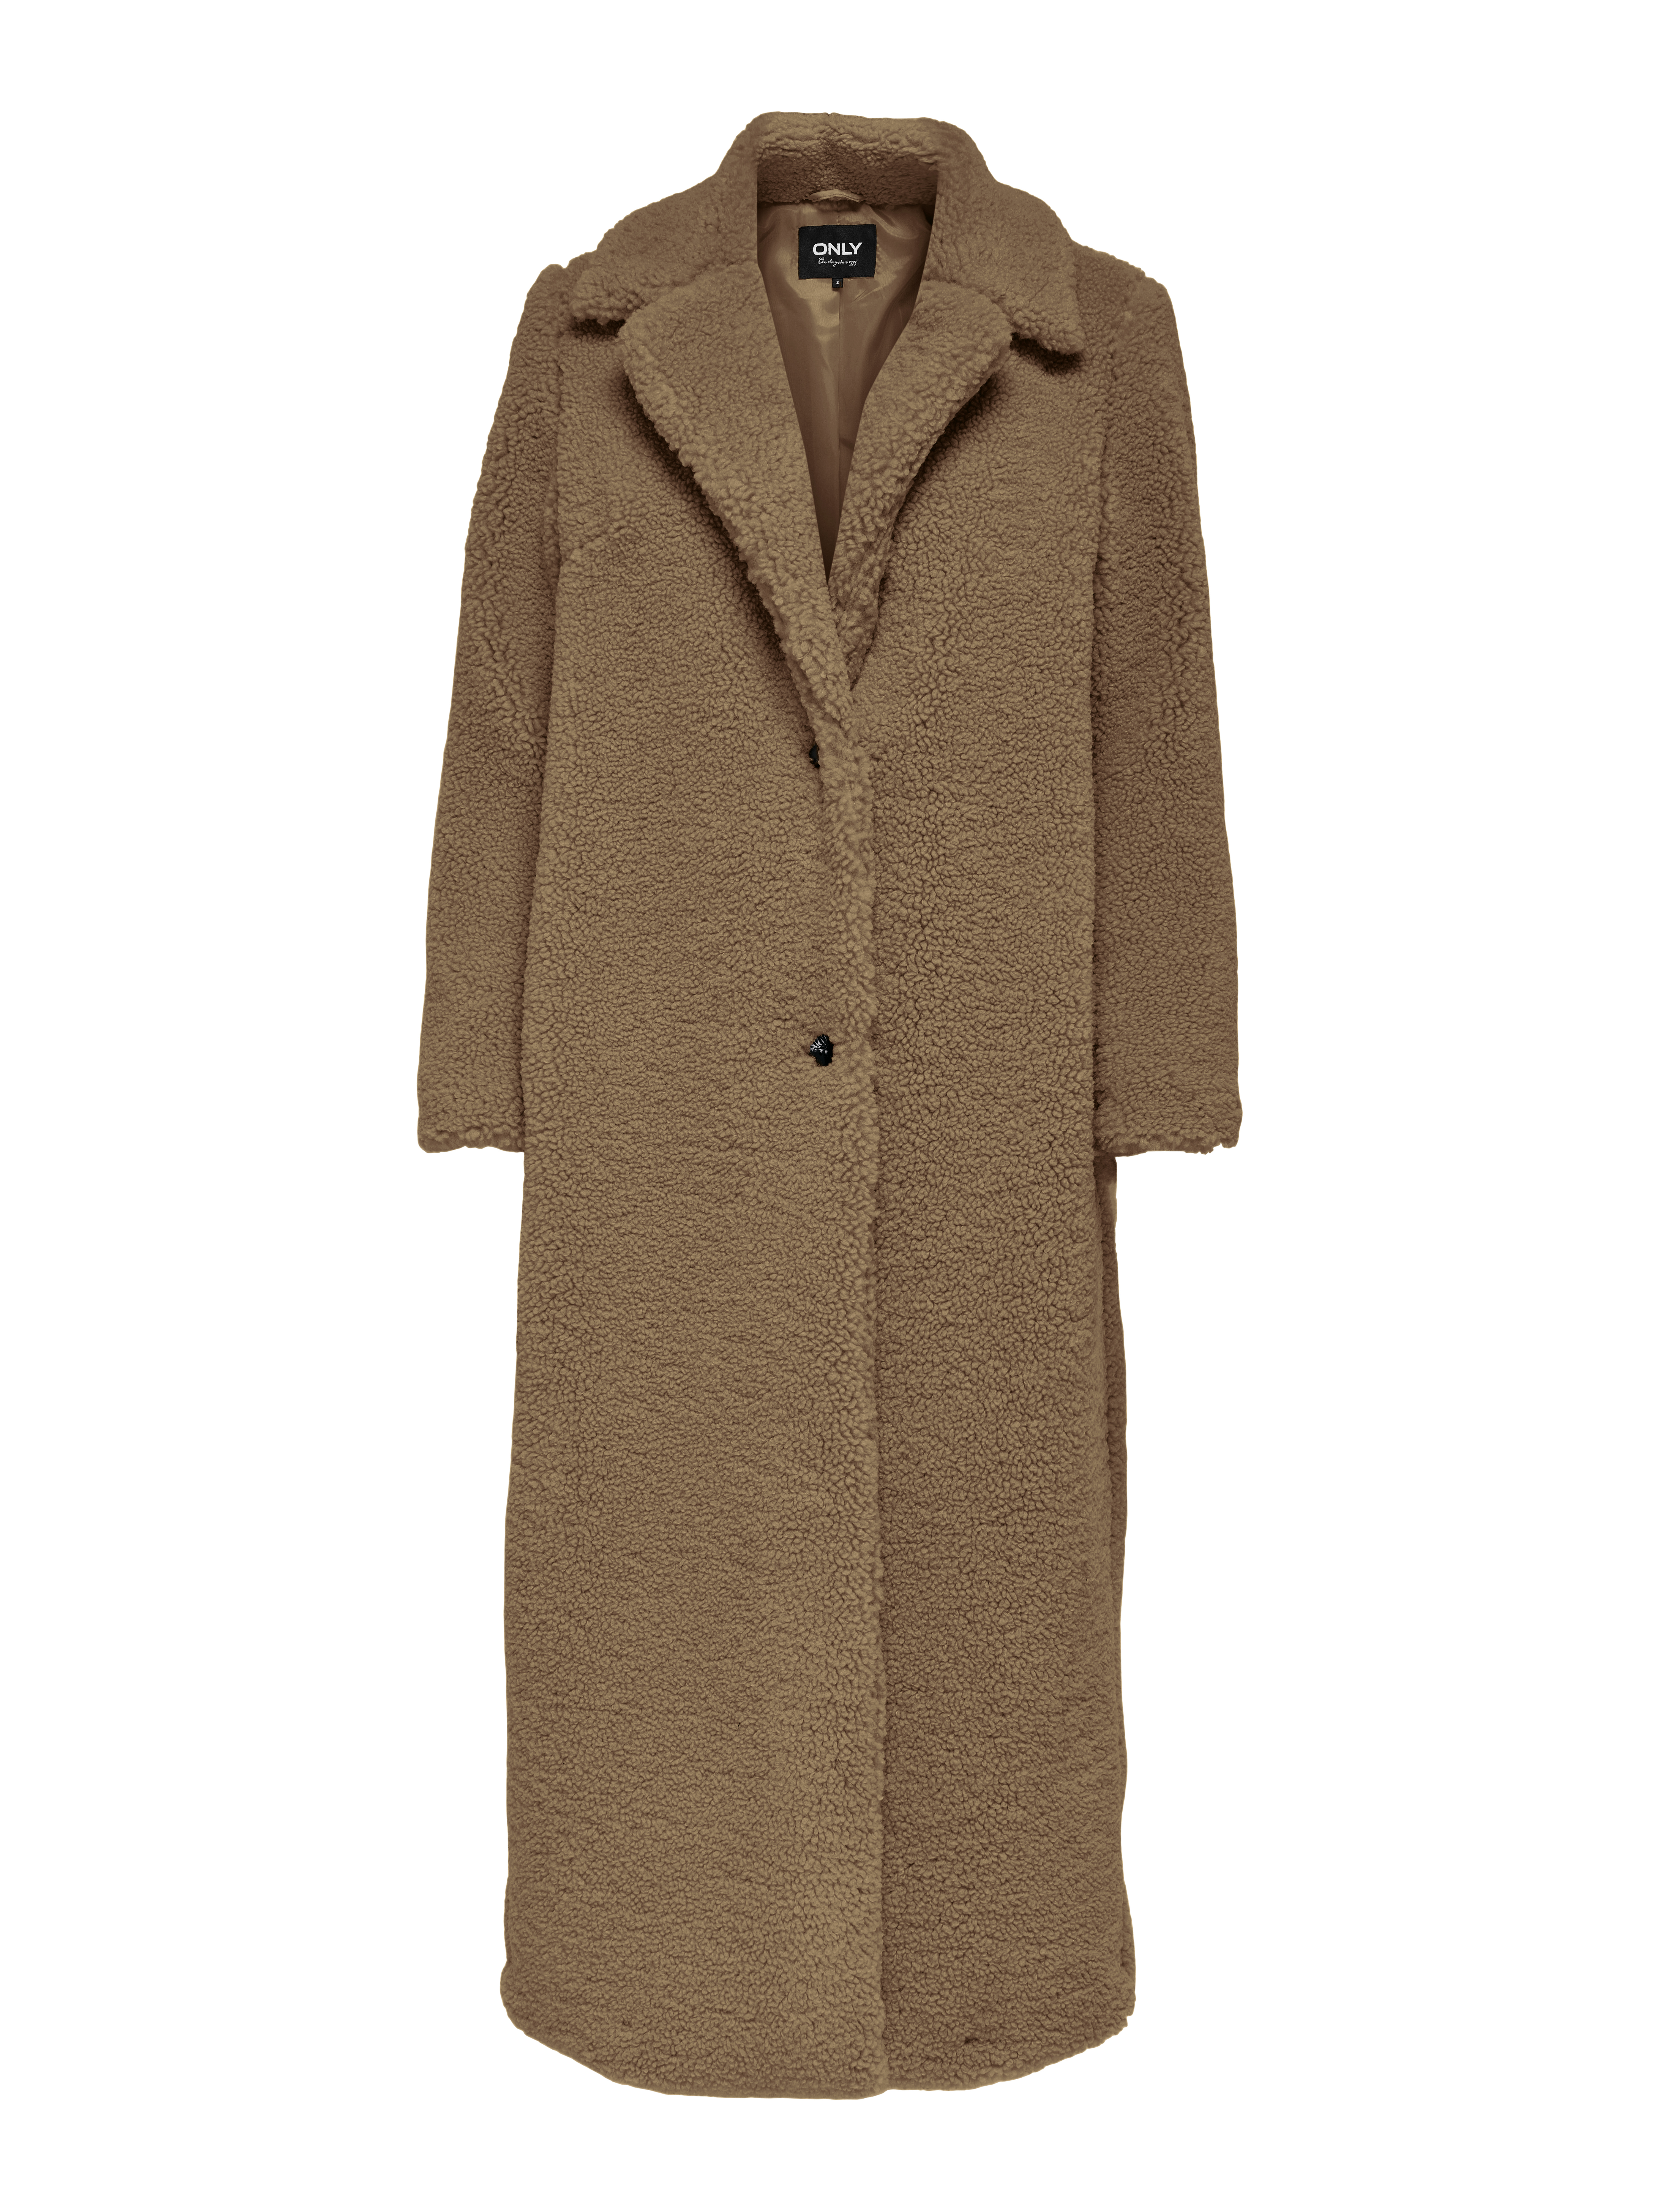 Odzież Kobiety ONLY Płaszcz przejściowy Britt w kolorze Jasnobrązowym 